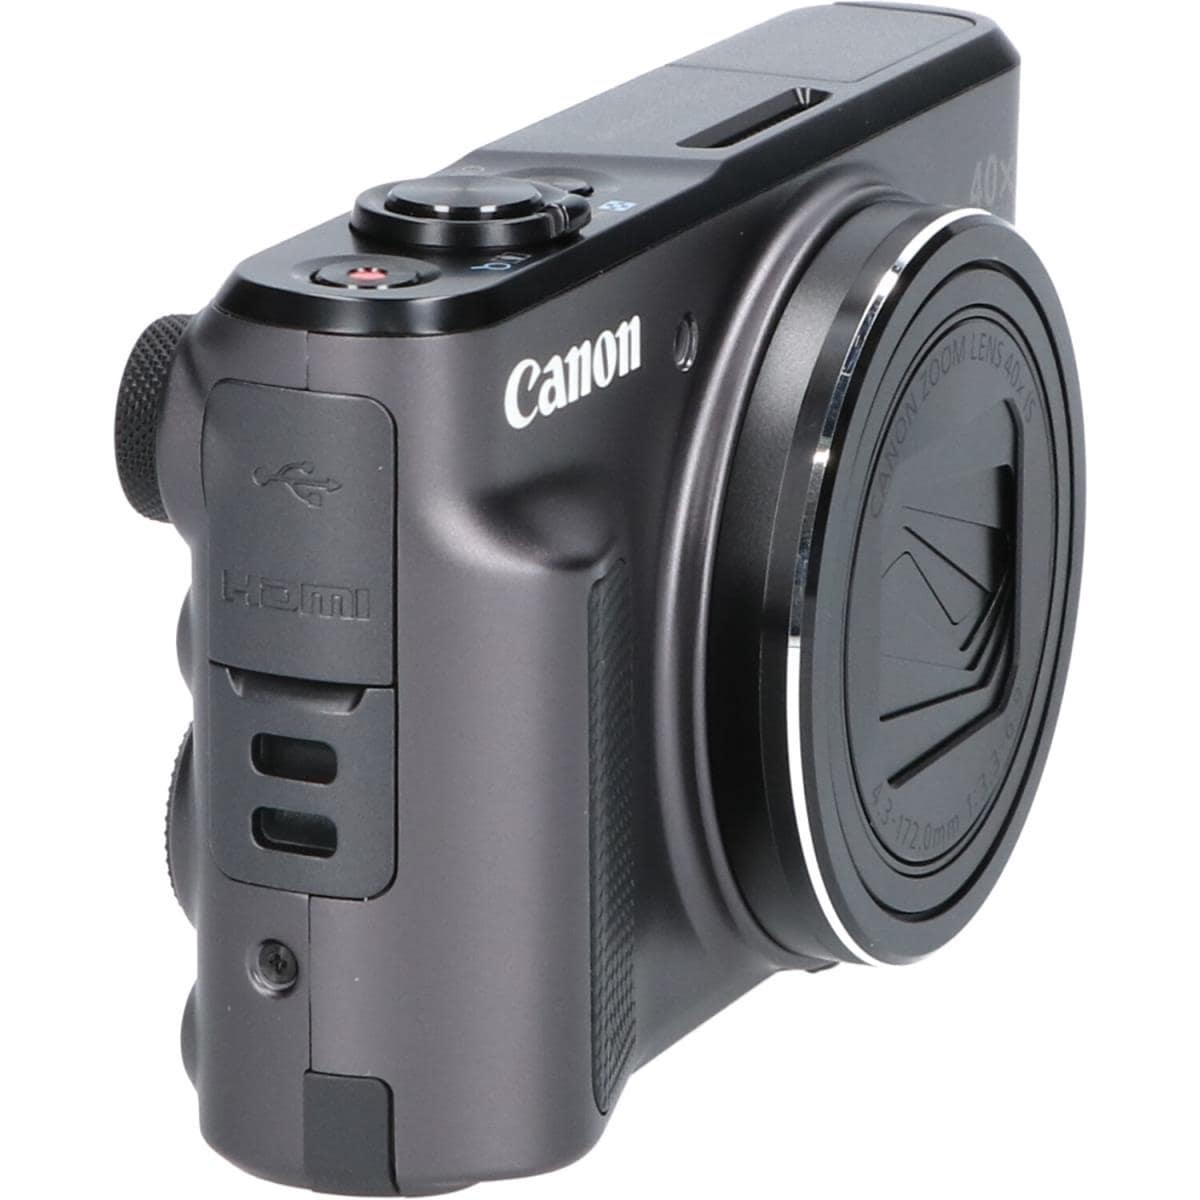 Canon SX720HS